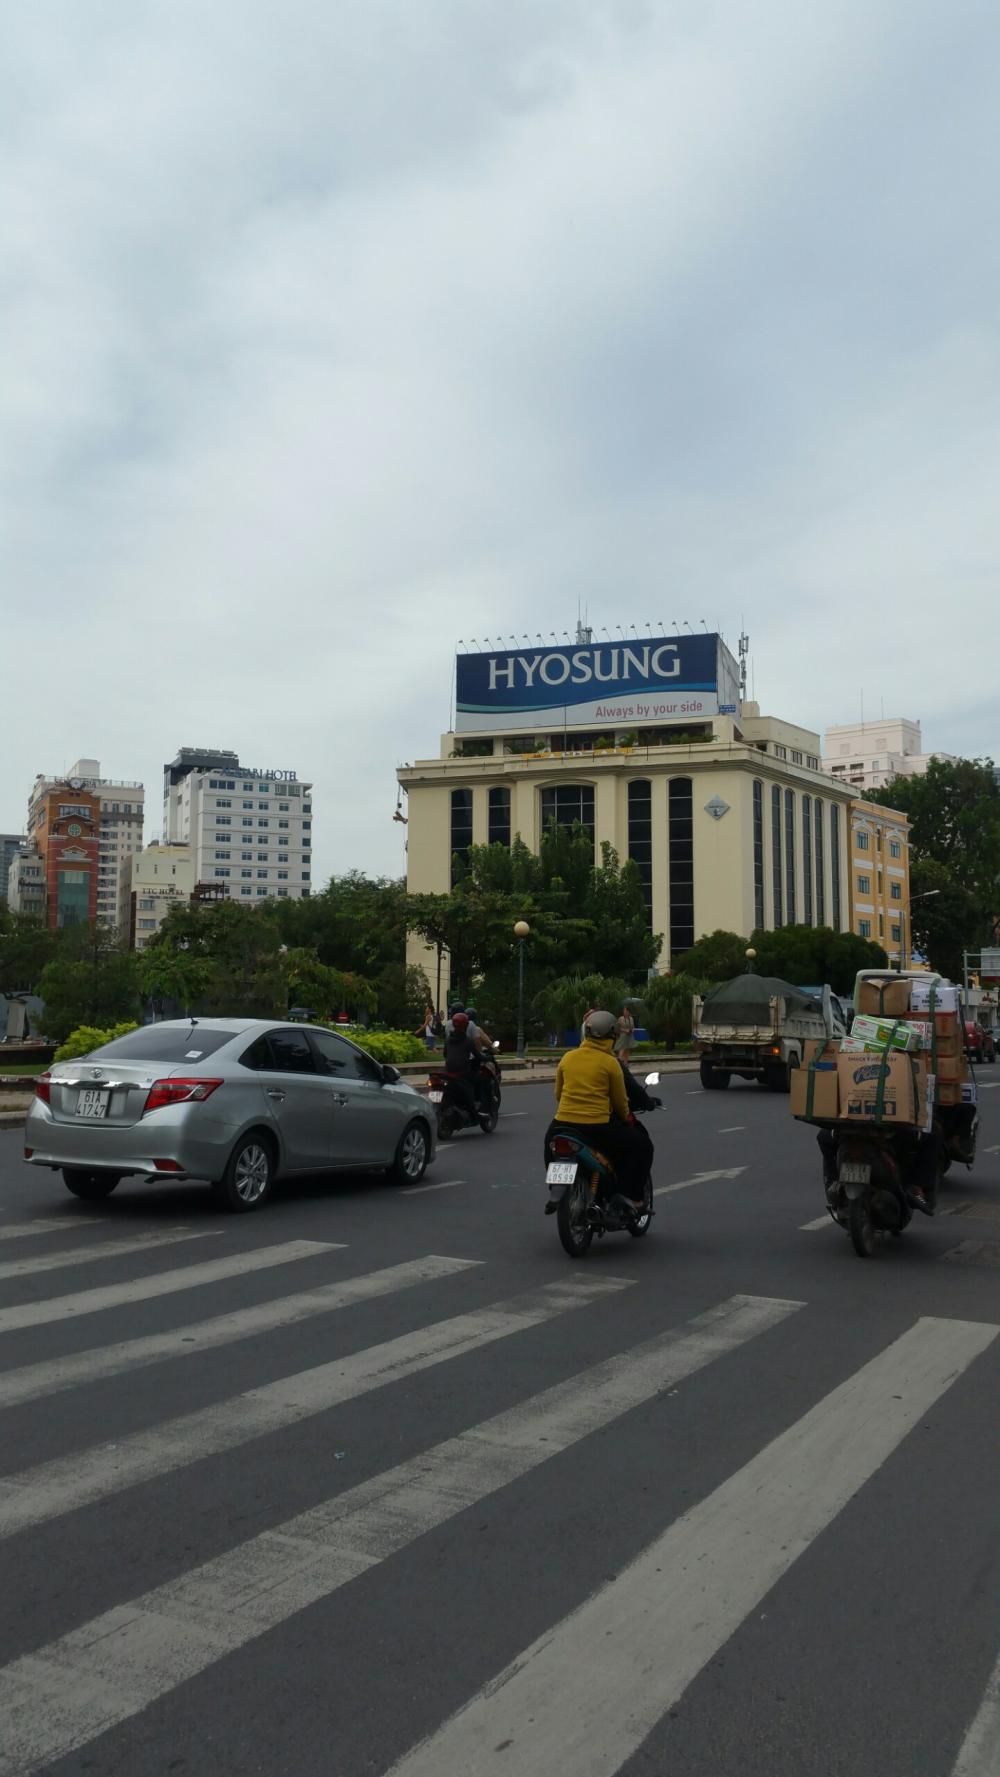 Bán nhà phố Tây Bùi Viện, Đỗ Quang Đẩu, Q. 1, 4x16.6m, 4 lầu, thu nhập 90tr/th, giá 18 tỷ